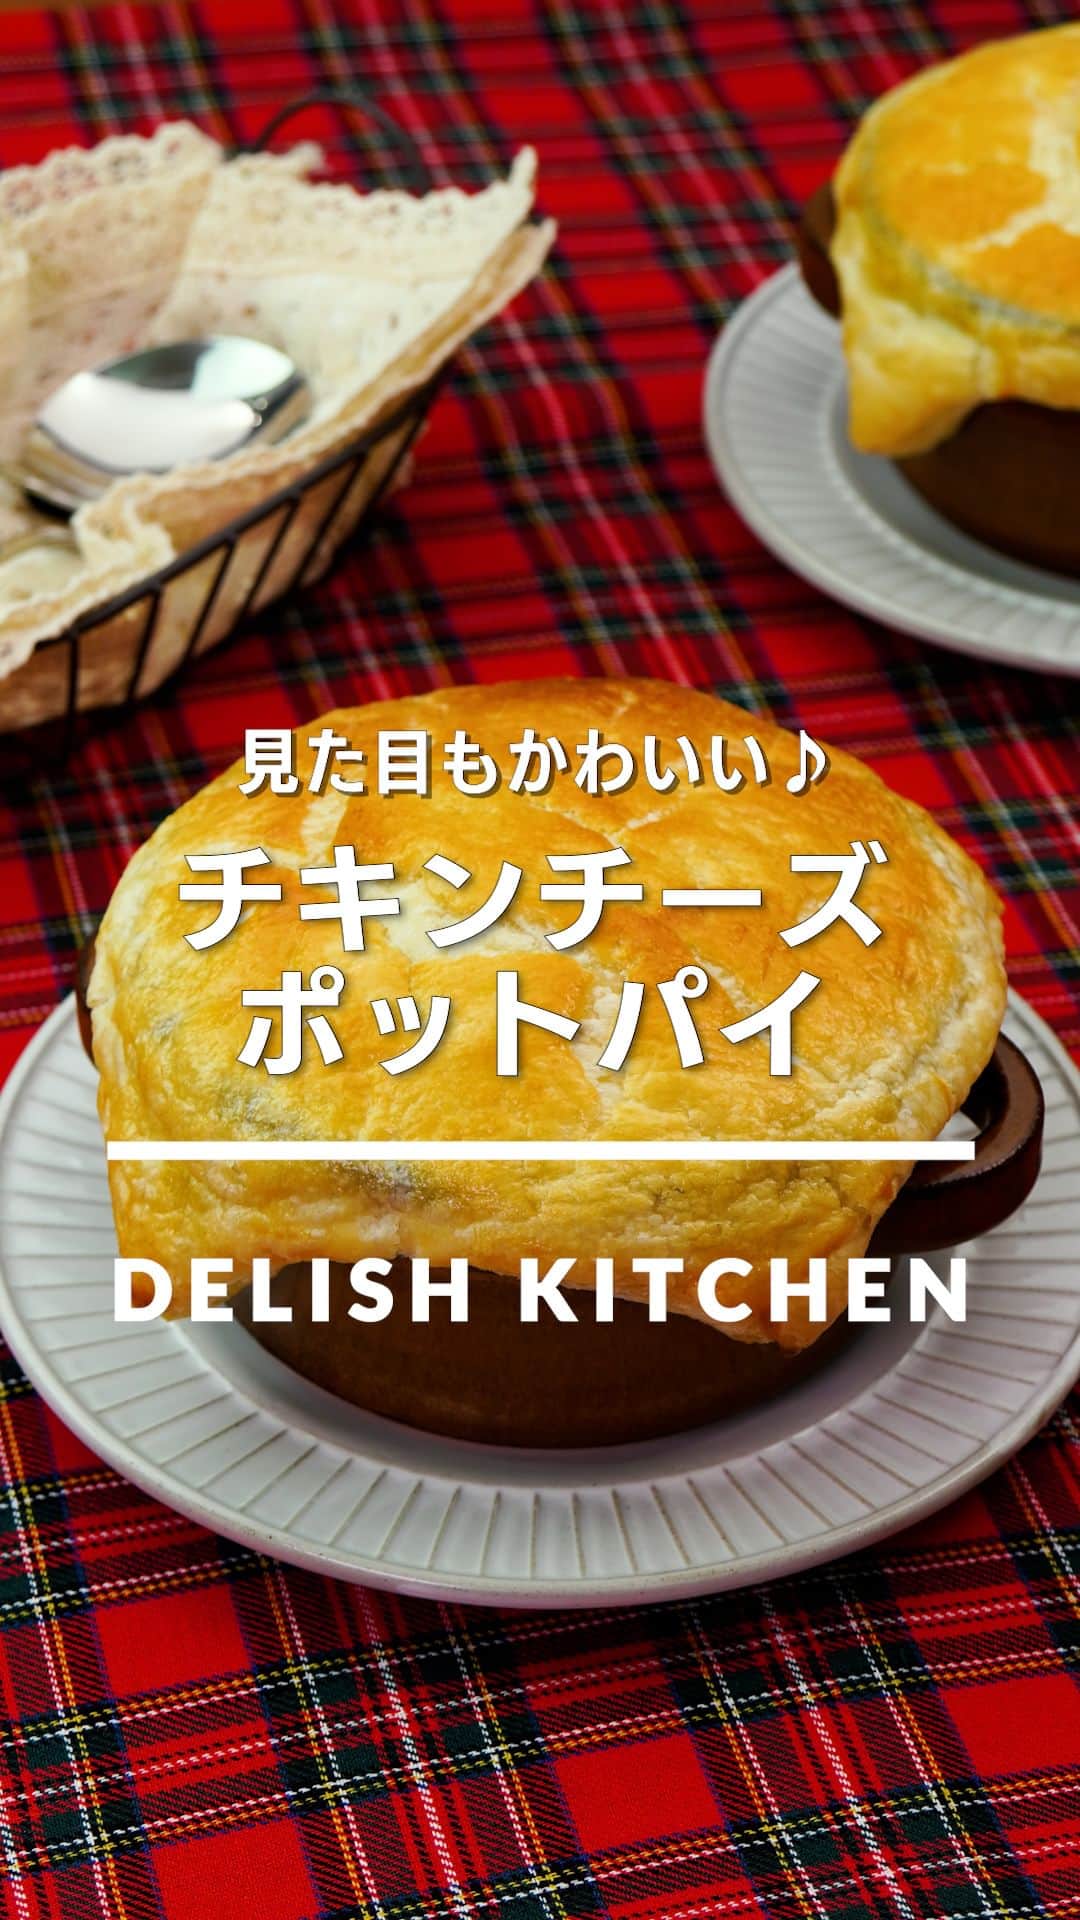 DELISH KITCHENのインスタグラム：「「チキンチーズポットパイ」 ⠀⠀ サクっとしたパイ生地をくずしながら、チーズのコクが美味しいクリームソースと一緒にいただきます。チーズがとろけているあたたかいうちにお召し上がりください♪ ⠀⠀ ★┈┈┈┈┈┈┈┈┈┈┈┈★ au5Gチャンネルでも、その他様々なDELISH KITCHENの簡単レシピを配信中！ 詳しくは @delishkitchen.tv ハイライトから♪ ★┈┈┈┈┈┈┈┈┈┈┈┈★ ⠀⠀ 動画を一時停止したい場合は、画面を長押ししてください！ ⠀⠀ 動画の詳細が気になる人はアプリで「チキンチーズポットパイ」で検索してみてくださいね♪ ⠀⠀ ■材料 (2人分) ・冷凍パイシート[10×18cm]　1枚 ・鶏むね肉　1枚(200g) ・ブロッコリー　1/2株 ・玉ねぎ　1/2個 ・ピザ用チーズ　40g ・サラダ油　小さじ1 ・有塩バター　10g ・薄力粉　大さじ2 ・溶き卵　1個分 ☆調味料 ・牛乳　200cc ・塩　小さじ1/3 ・こしょう　少々 ・コンソメ　小さじ1 ⠀⠀ ■手順 (1)鶏肉は食べやすい大きさに切る。 (2)ブロッコリーは小房に切る。耐熱容器に入れ、水(分量外:大さじ1)を加えてふんわりとラップをし、600Wのレンジで1分加熱し、水気を切る。玉ねぎは縦に薄切りにする。 (3)冷凍パイシートは常温に戻し、めん棒でひとまわり大きくなるまでのばして半分に切る。 (4)フライパンにサラダ油を入れて中火で熱し、鶏肉を入れて焼き色がつくまで2分ほど炒める。 (5)玉ねぎを加えてしんなりするまで炒める。バター、薄力粉を加えて粉気がなくなるまで炒める。 (6)☆を加えてとろみがつくまで混ぜながら加熱する。ブロッコリーを加えて混ぜながら1分煮る。粗熱をとる。(オーブンを220℃に予熱しましょう。) (7)耐熱皿に6を等分に入れ、ピザ用チーズを等分にのせる。耐熱容器のふちに溶き卵をぬり、冷凍パイシートを1枚ずつのせてしっかりと被せる。残りの溶き卵をぬる。220℃に予熱したオーブンで10分焼く。 ⠀⠀ #デリッシュキッチン #DELISHKITCHEN #料理 #レシピ #時短 #おうちごはん #手料理 #簡単レシピ #手作りごはん #今日のごはん #おうちカフェ #ホットパイ #チキンチーズホットパイ」